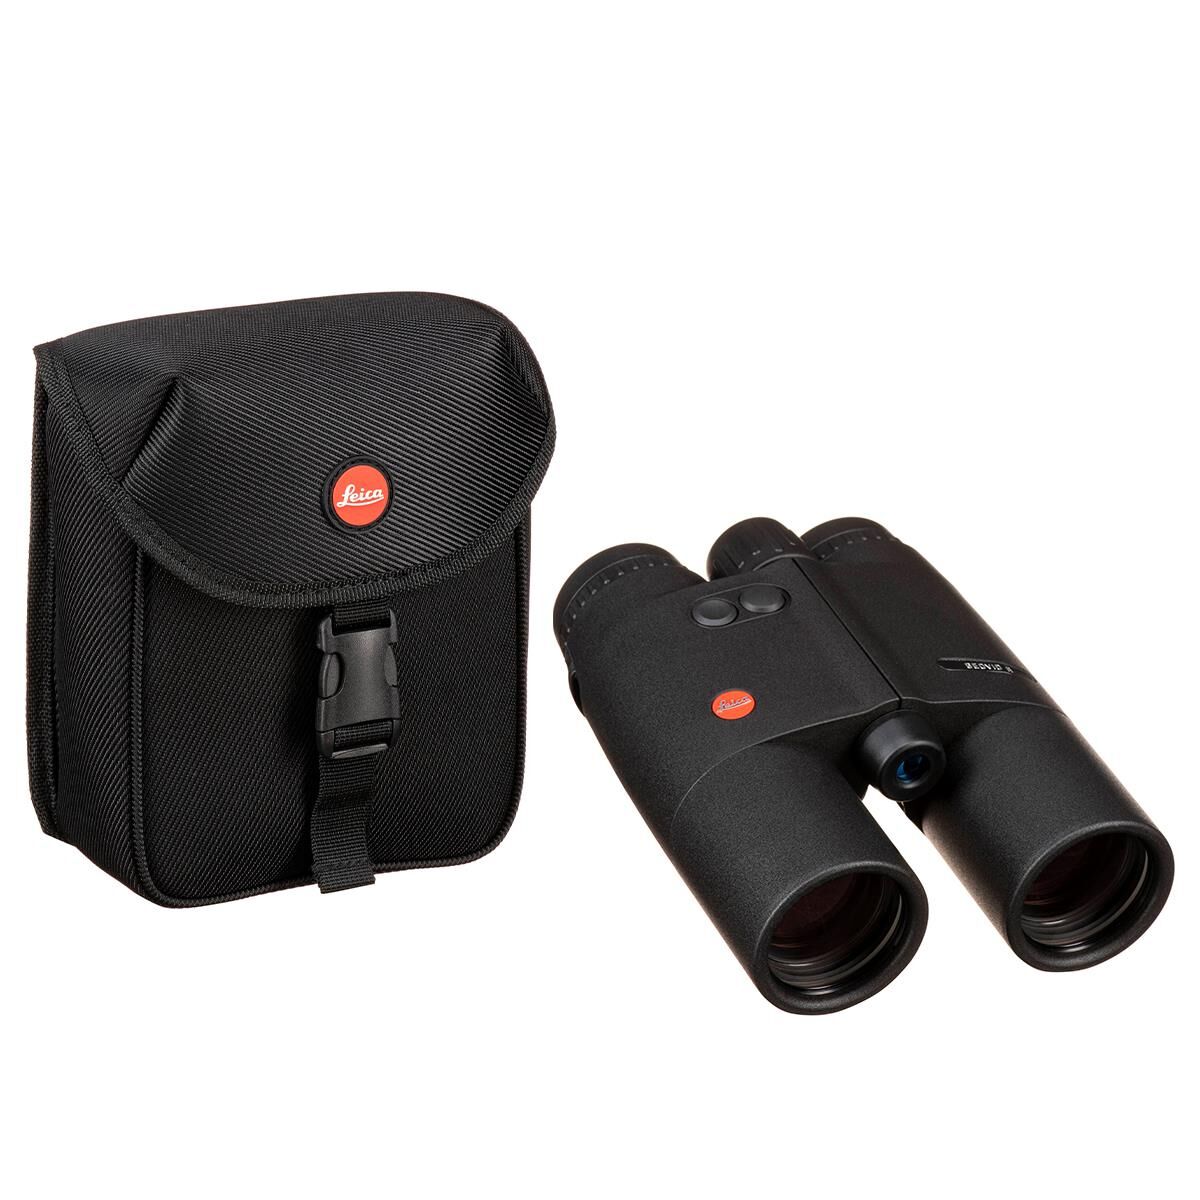 Leica 10x42 Geovid R Waterproof Roof Prism Rangefinder Binoculars w/6.3 Deg. AOV